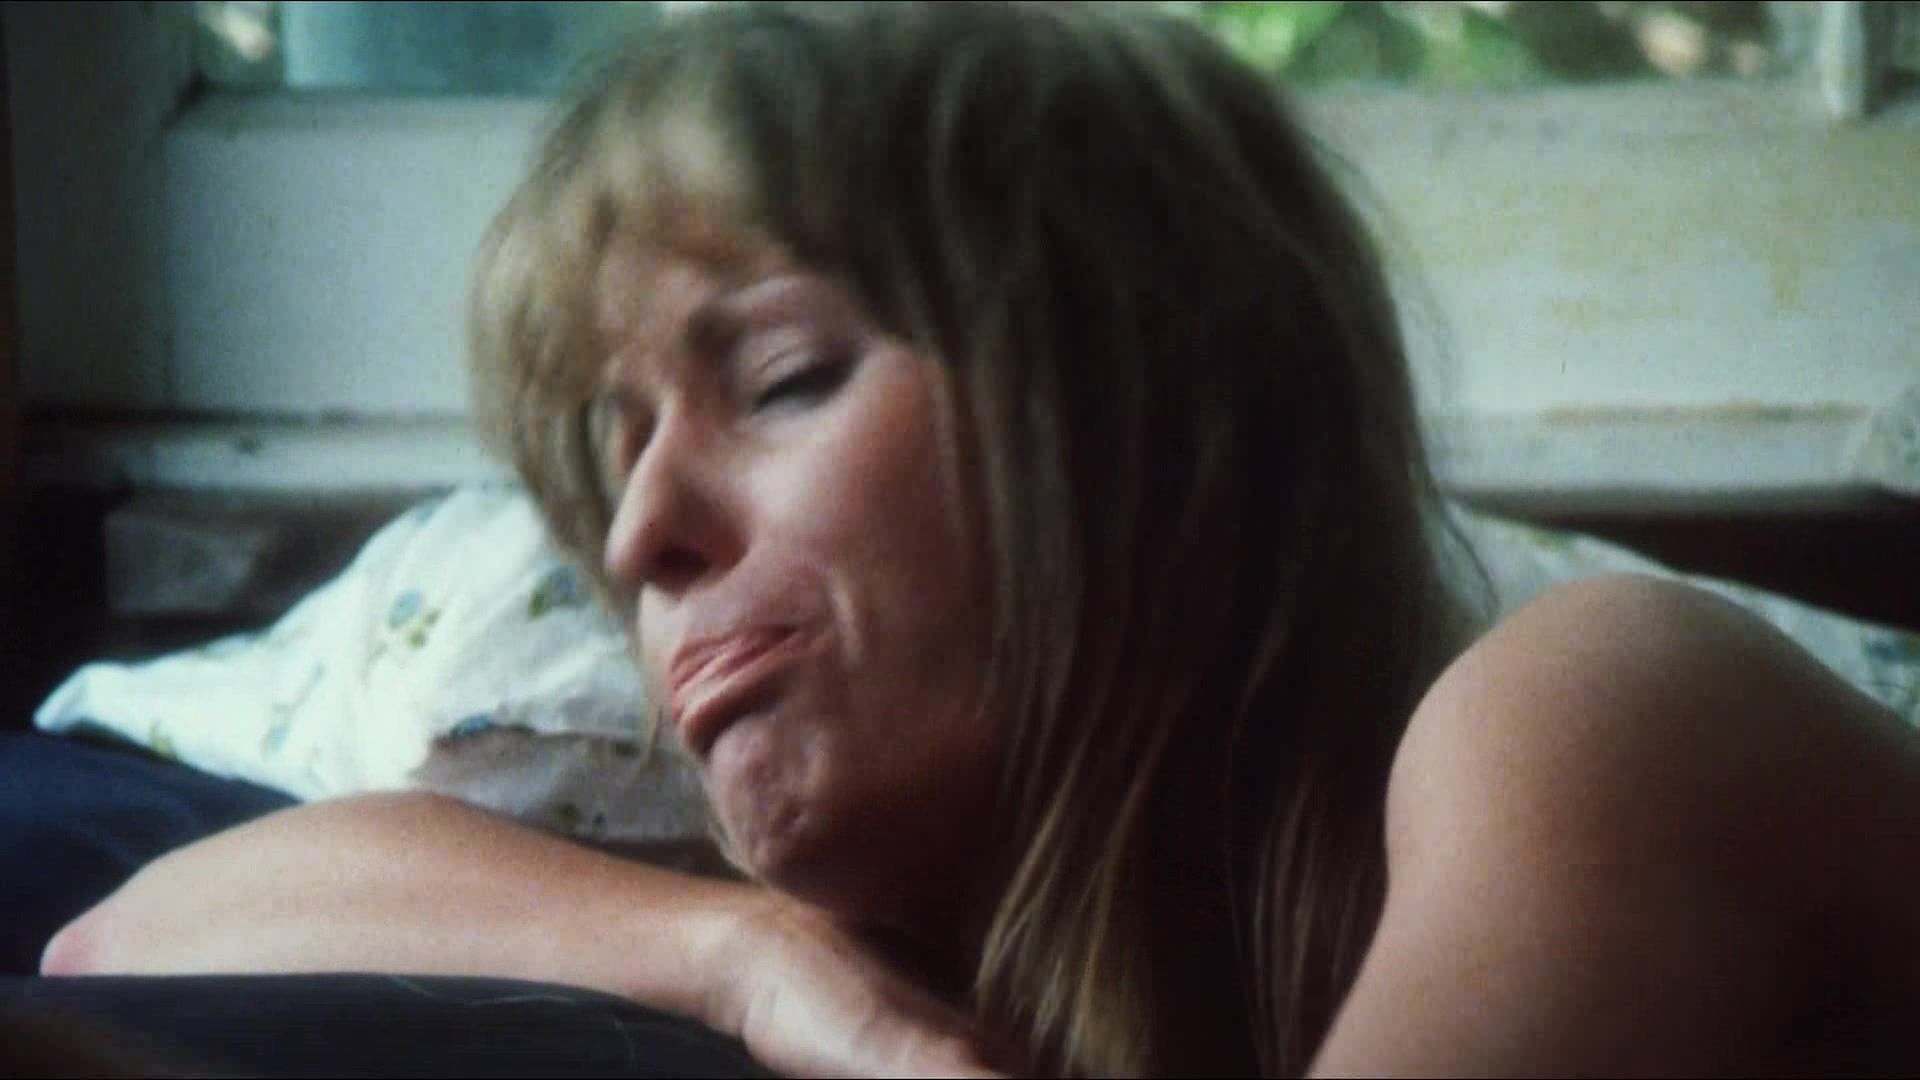 Bucetinha Classic Erotic Film "Stone" (1974) Female Orgasm